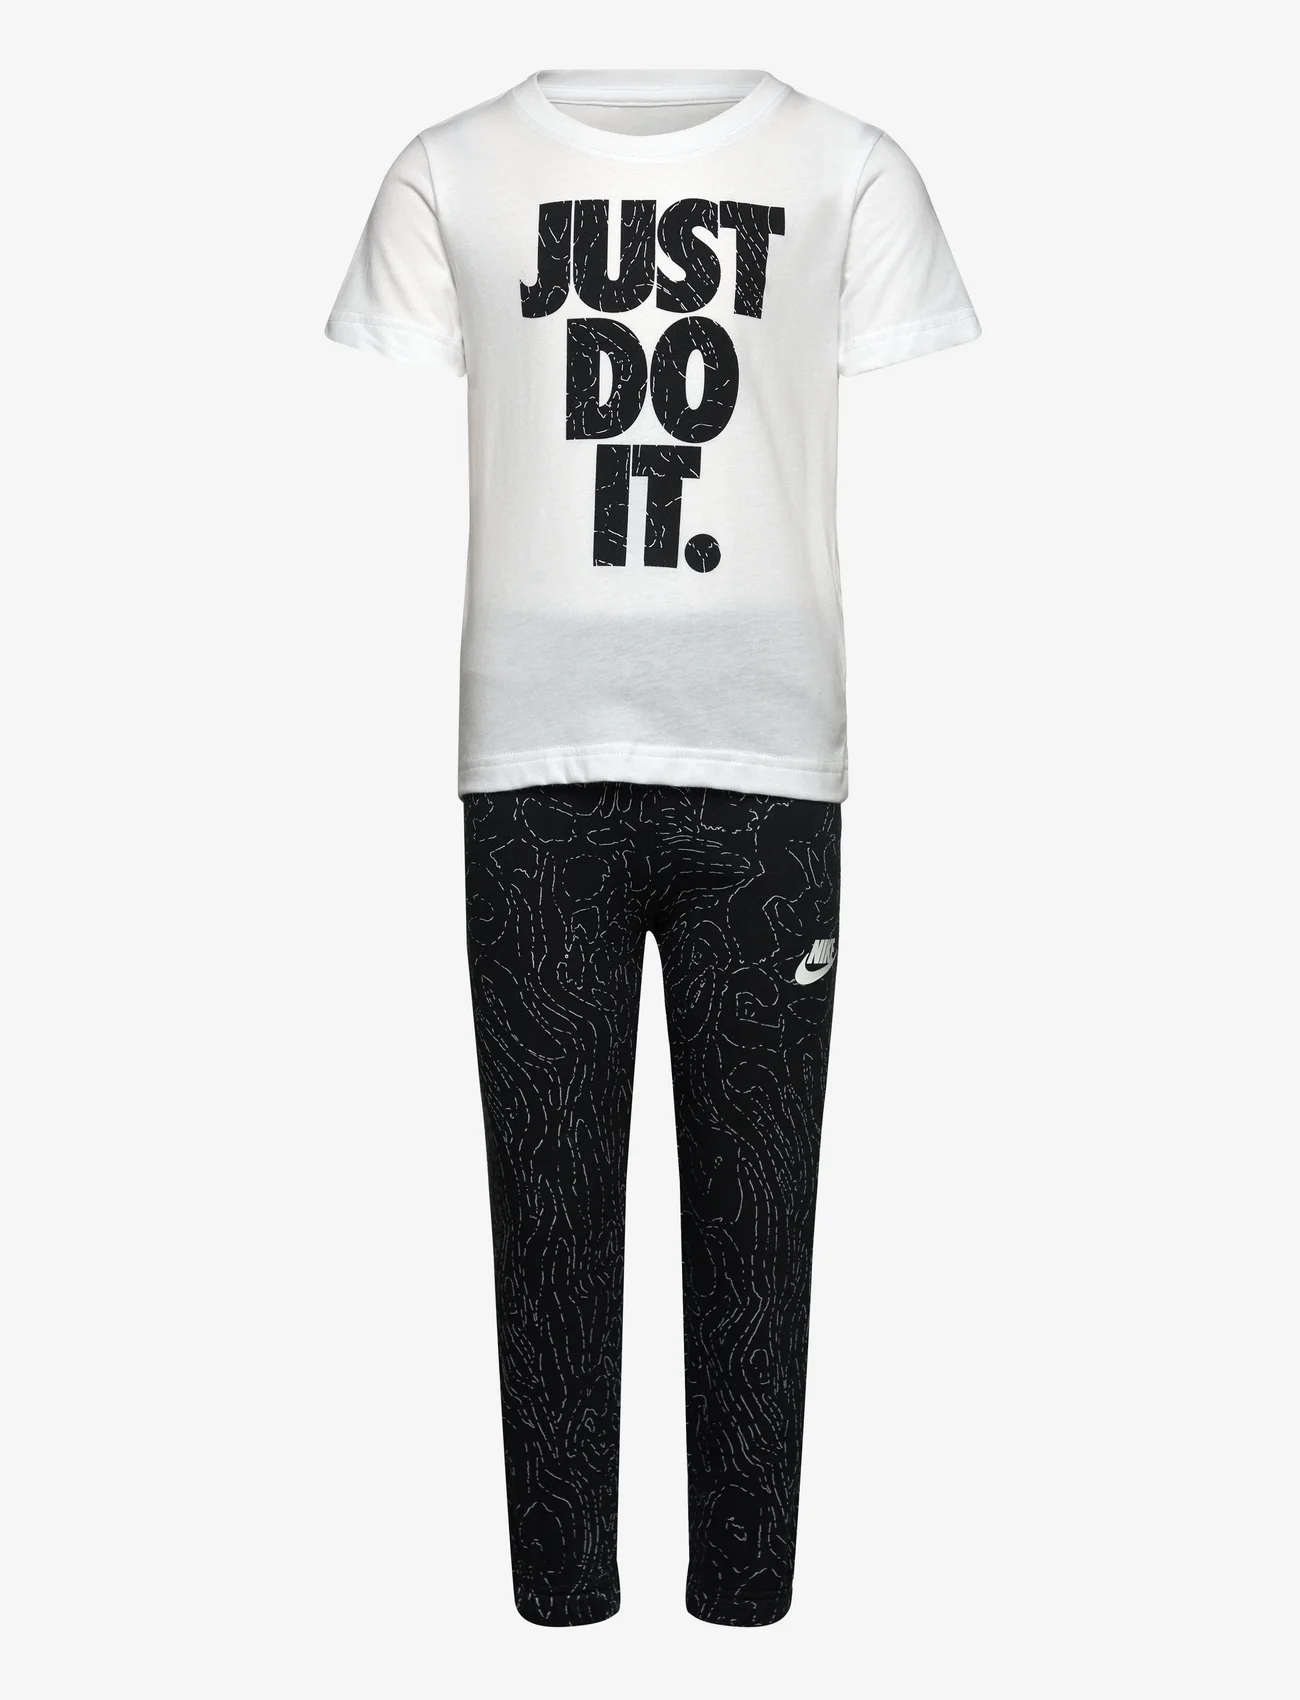 Nike - CLUB FLEECE SET - set med kortärmad t-shirt - black - 0